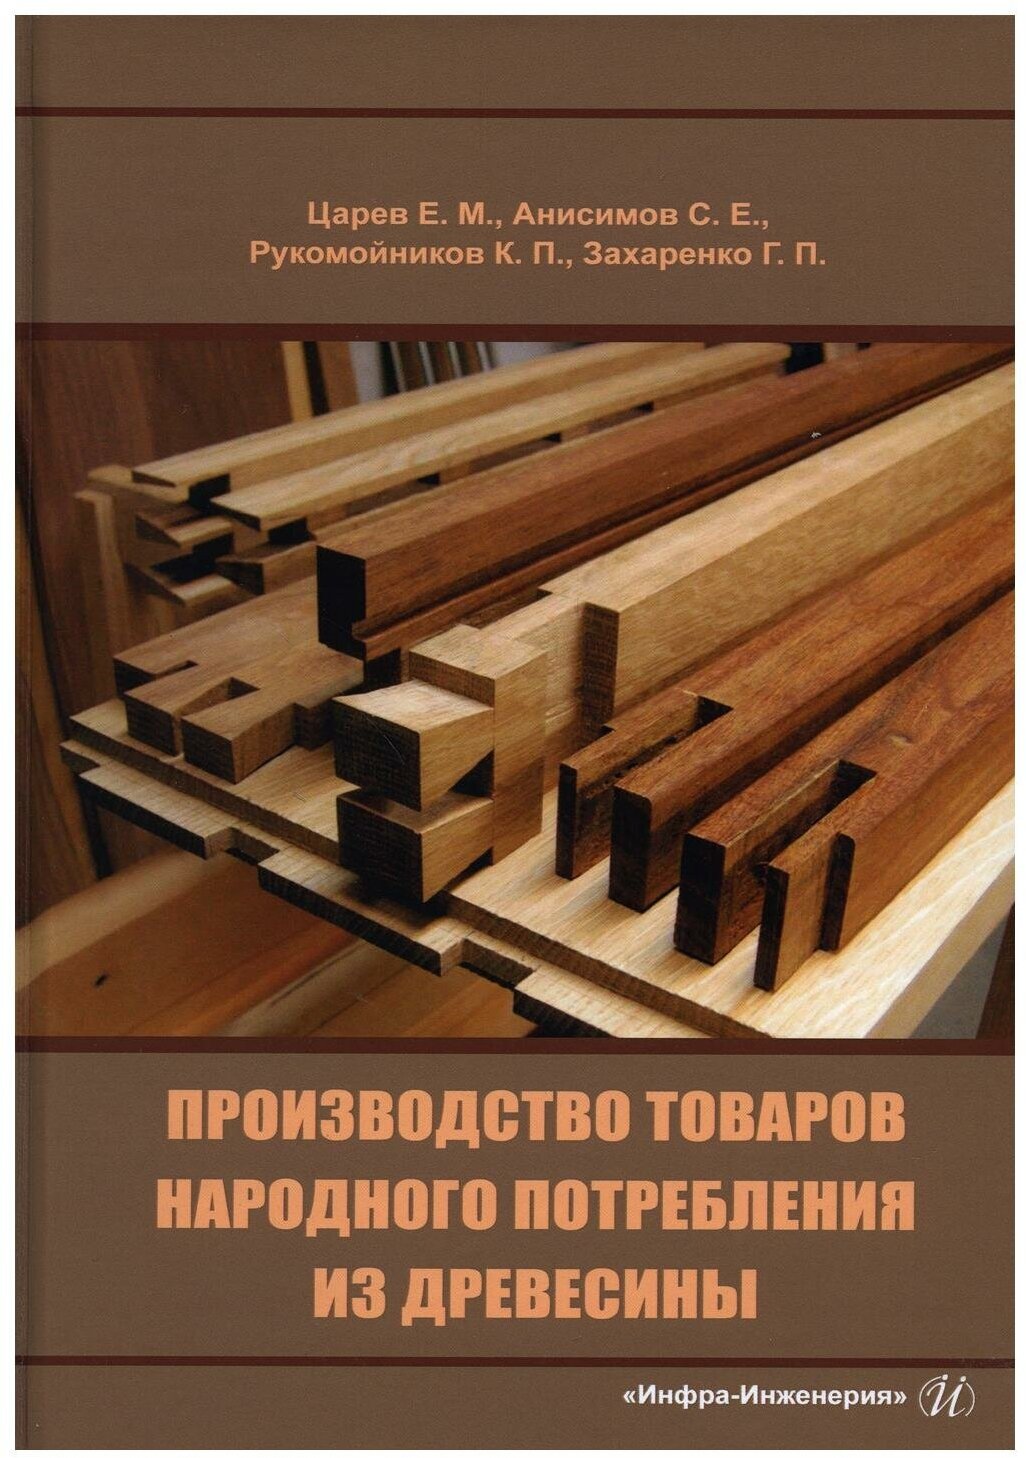 Производство товаров народного потребления из древесины - фото №1